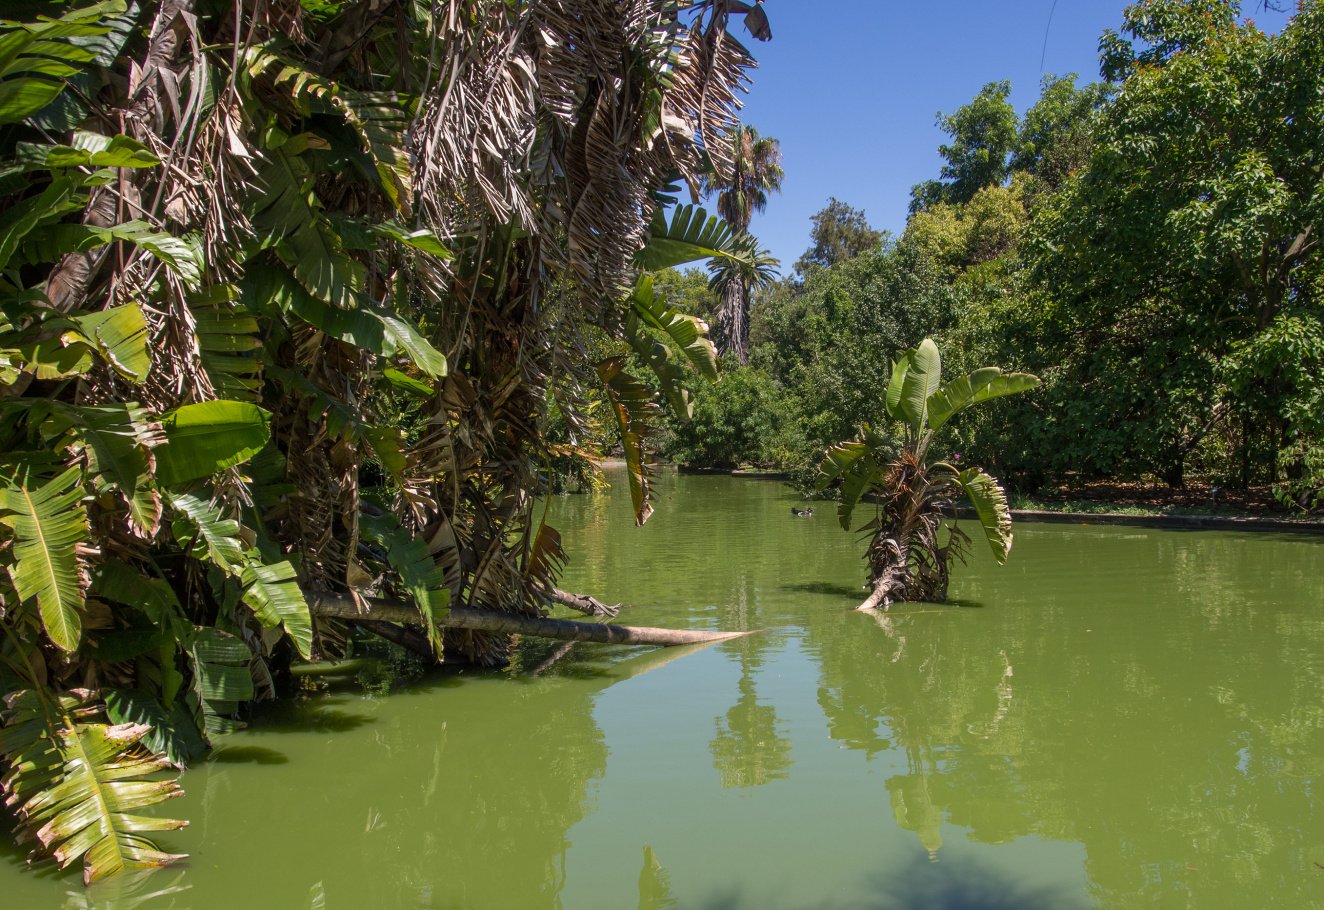 Der Botanische Garten in Belém
Foto: Wally Raths
